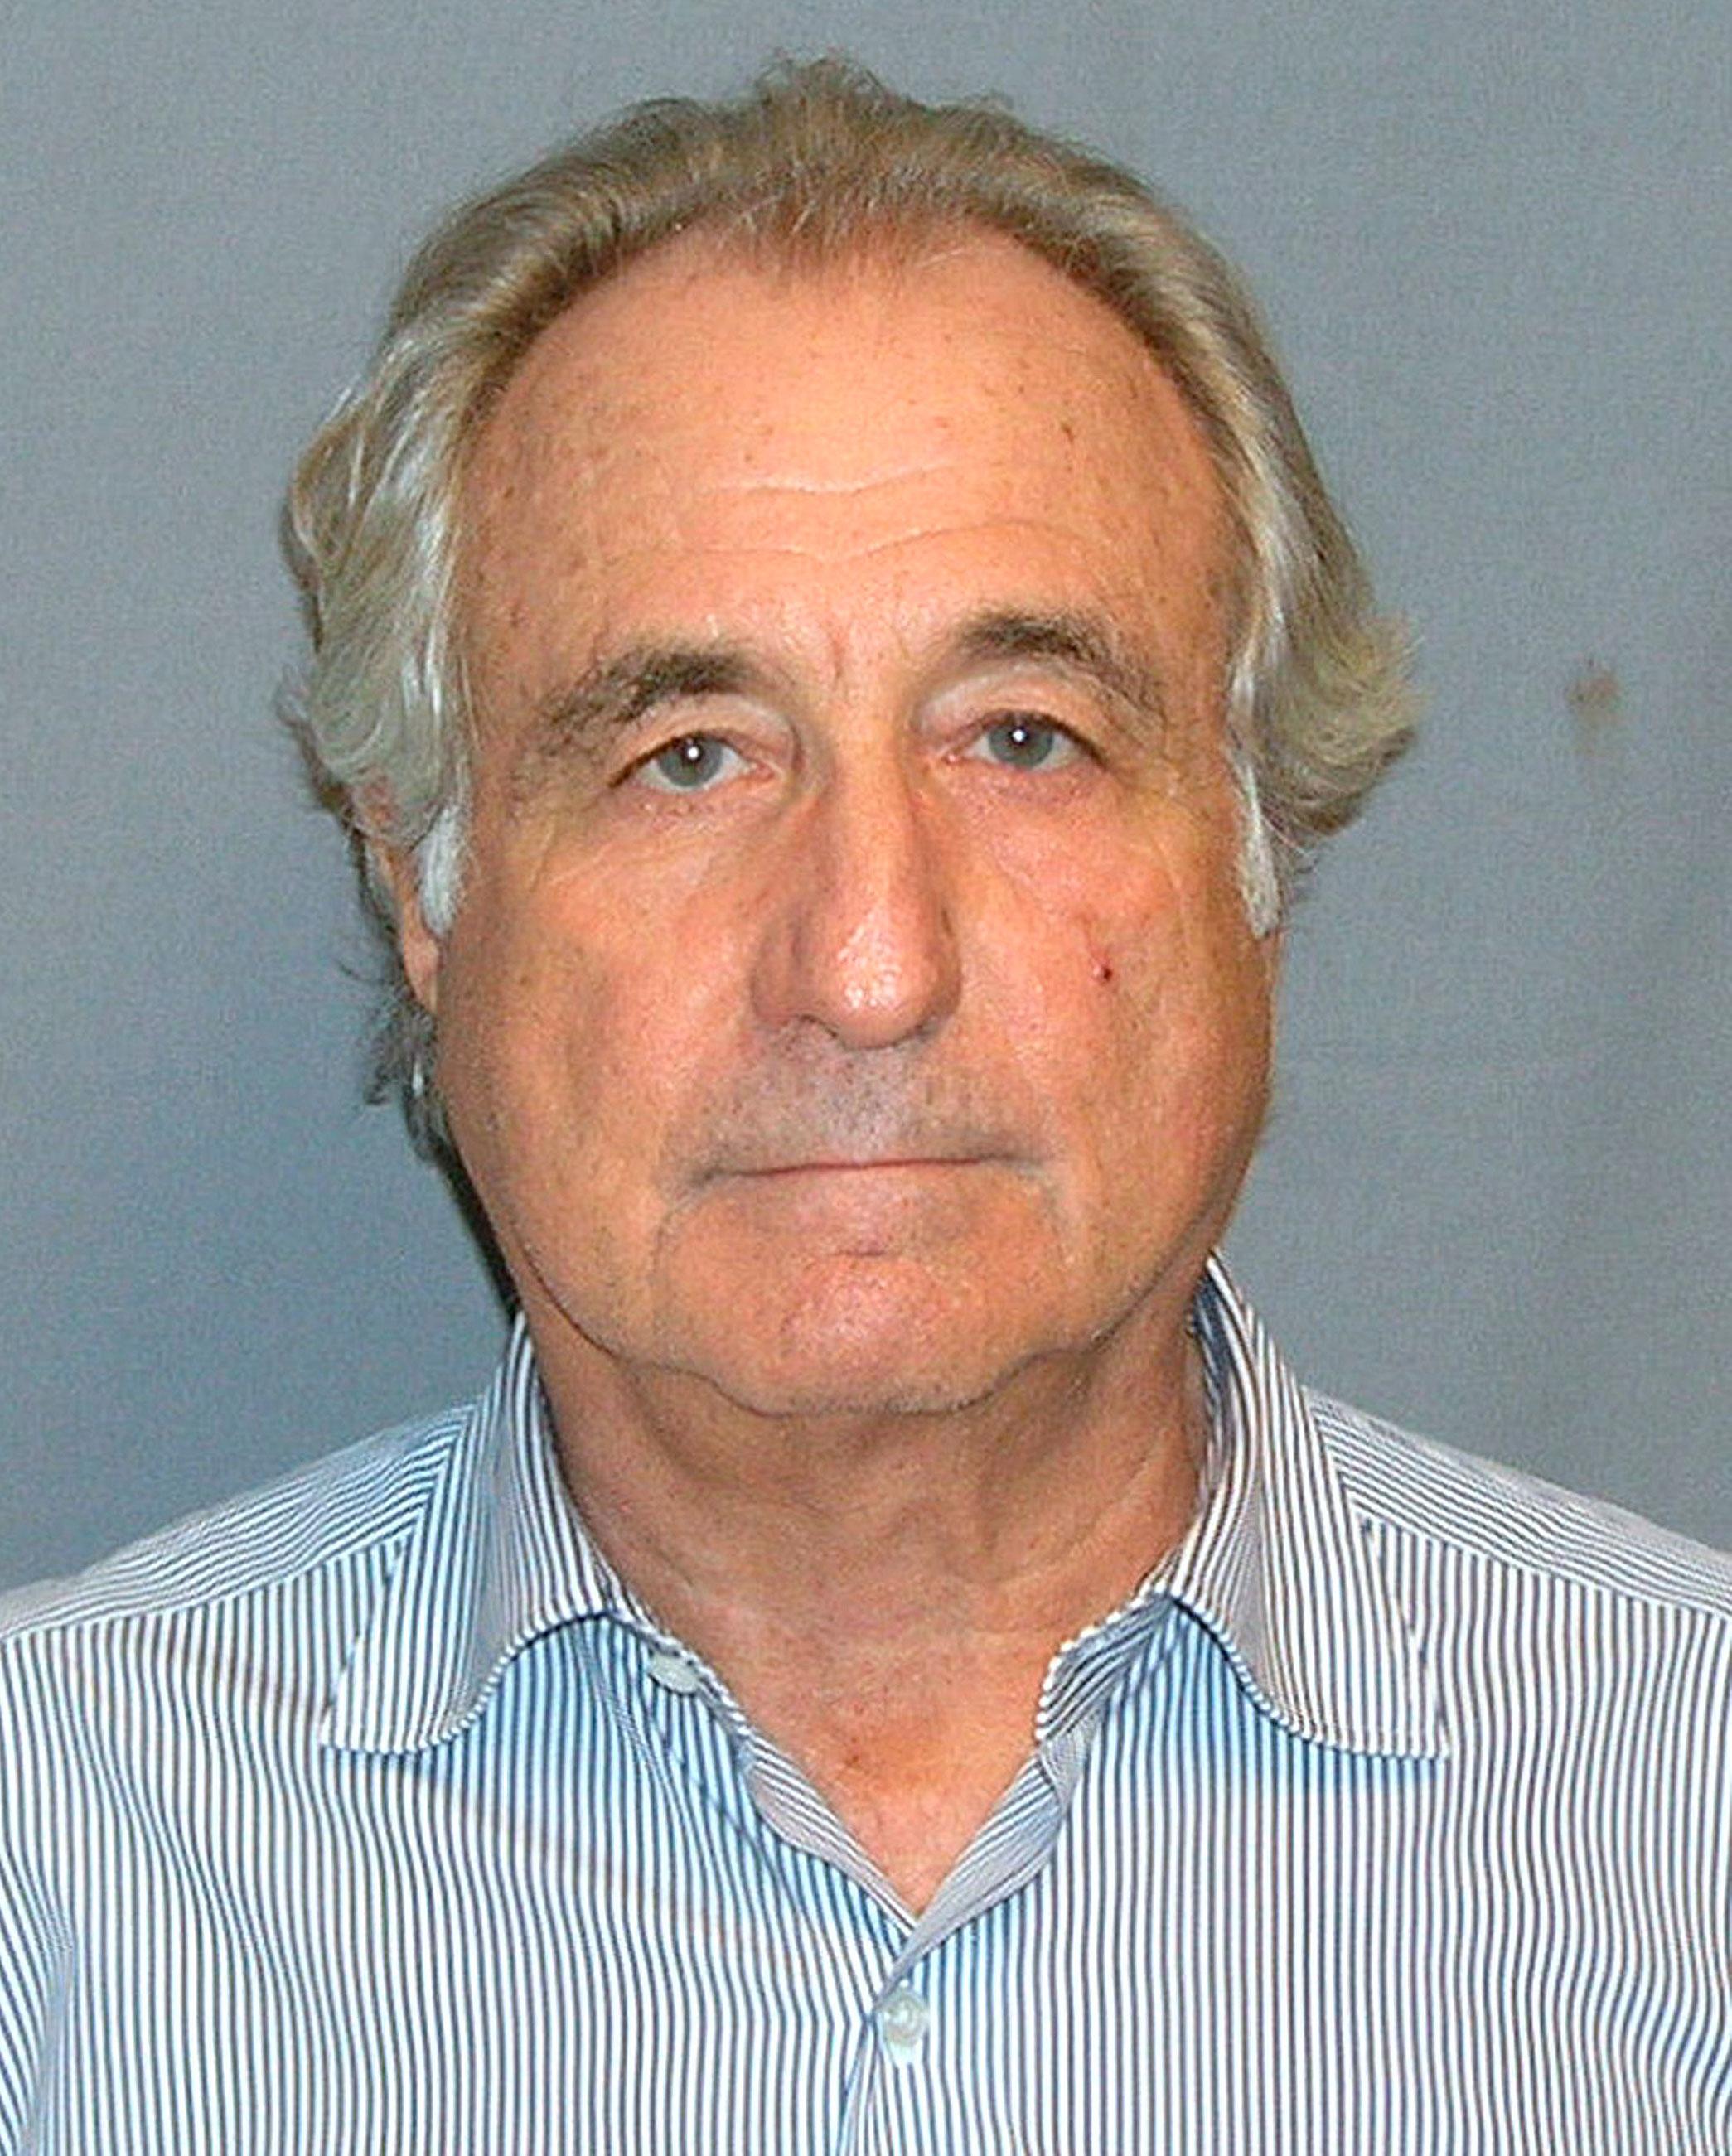 Notorious Ponzi Schemer Bernie Madoff Dies In Prison At 82